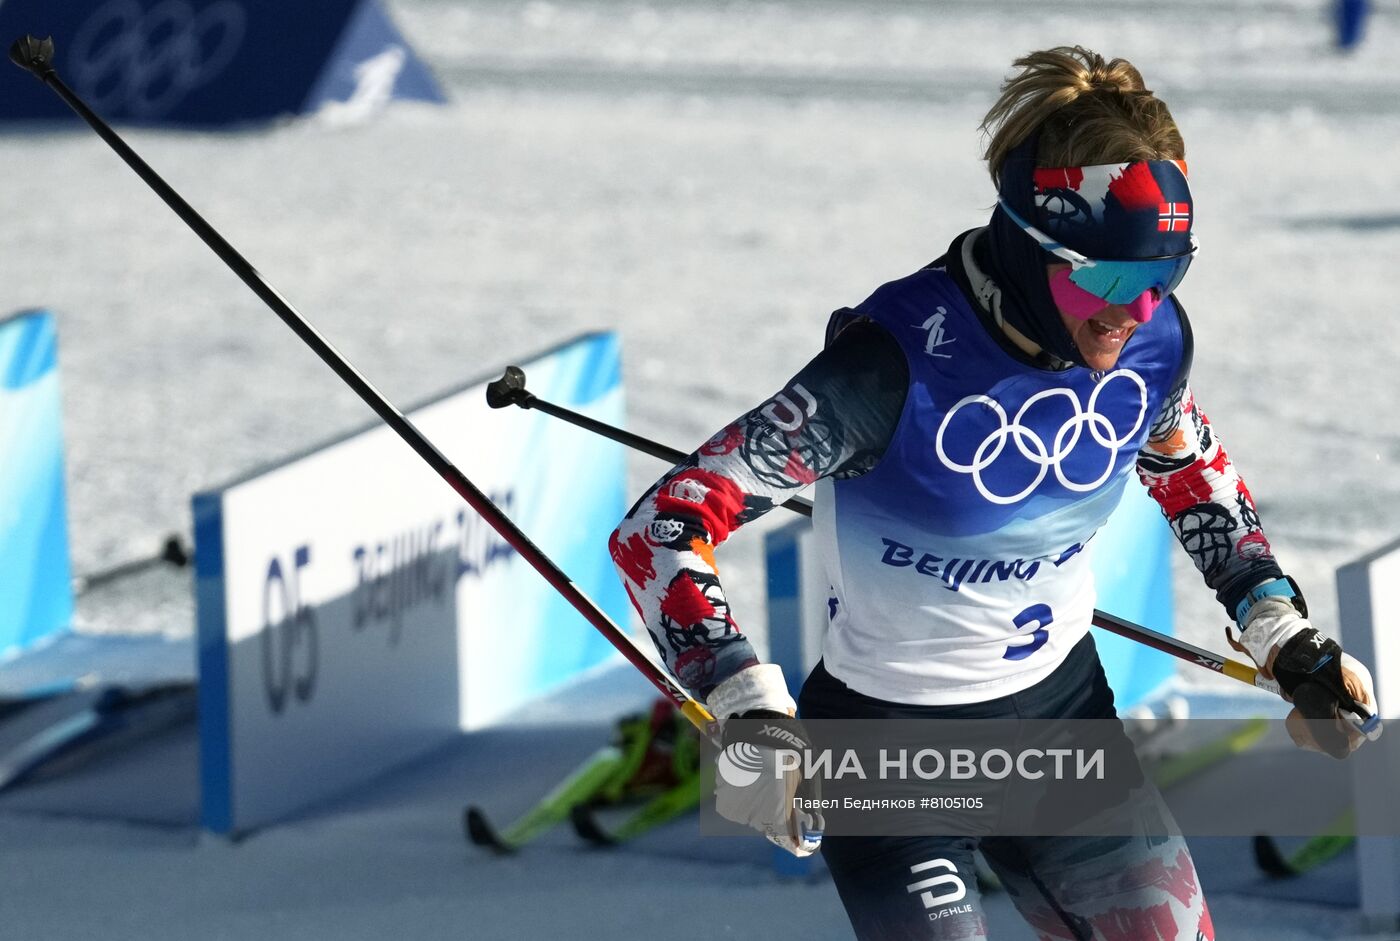 Видео скиатлона сегодня мужчины. Лыжные гонки скиатлон женщины. Скиатлон. Сидько Алена Викторовна биография.